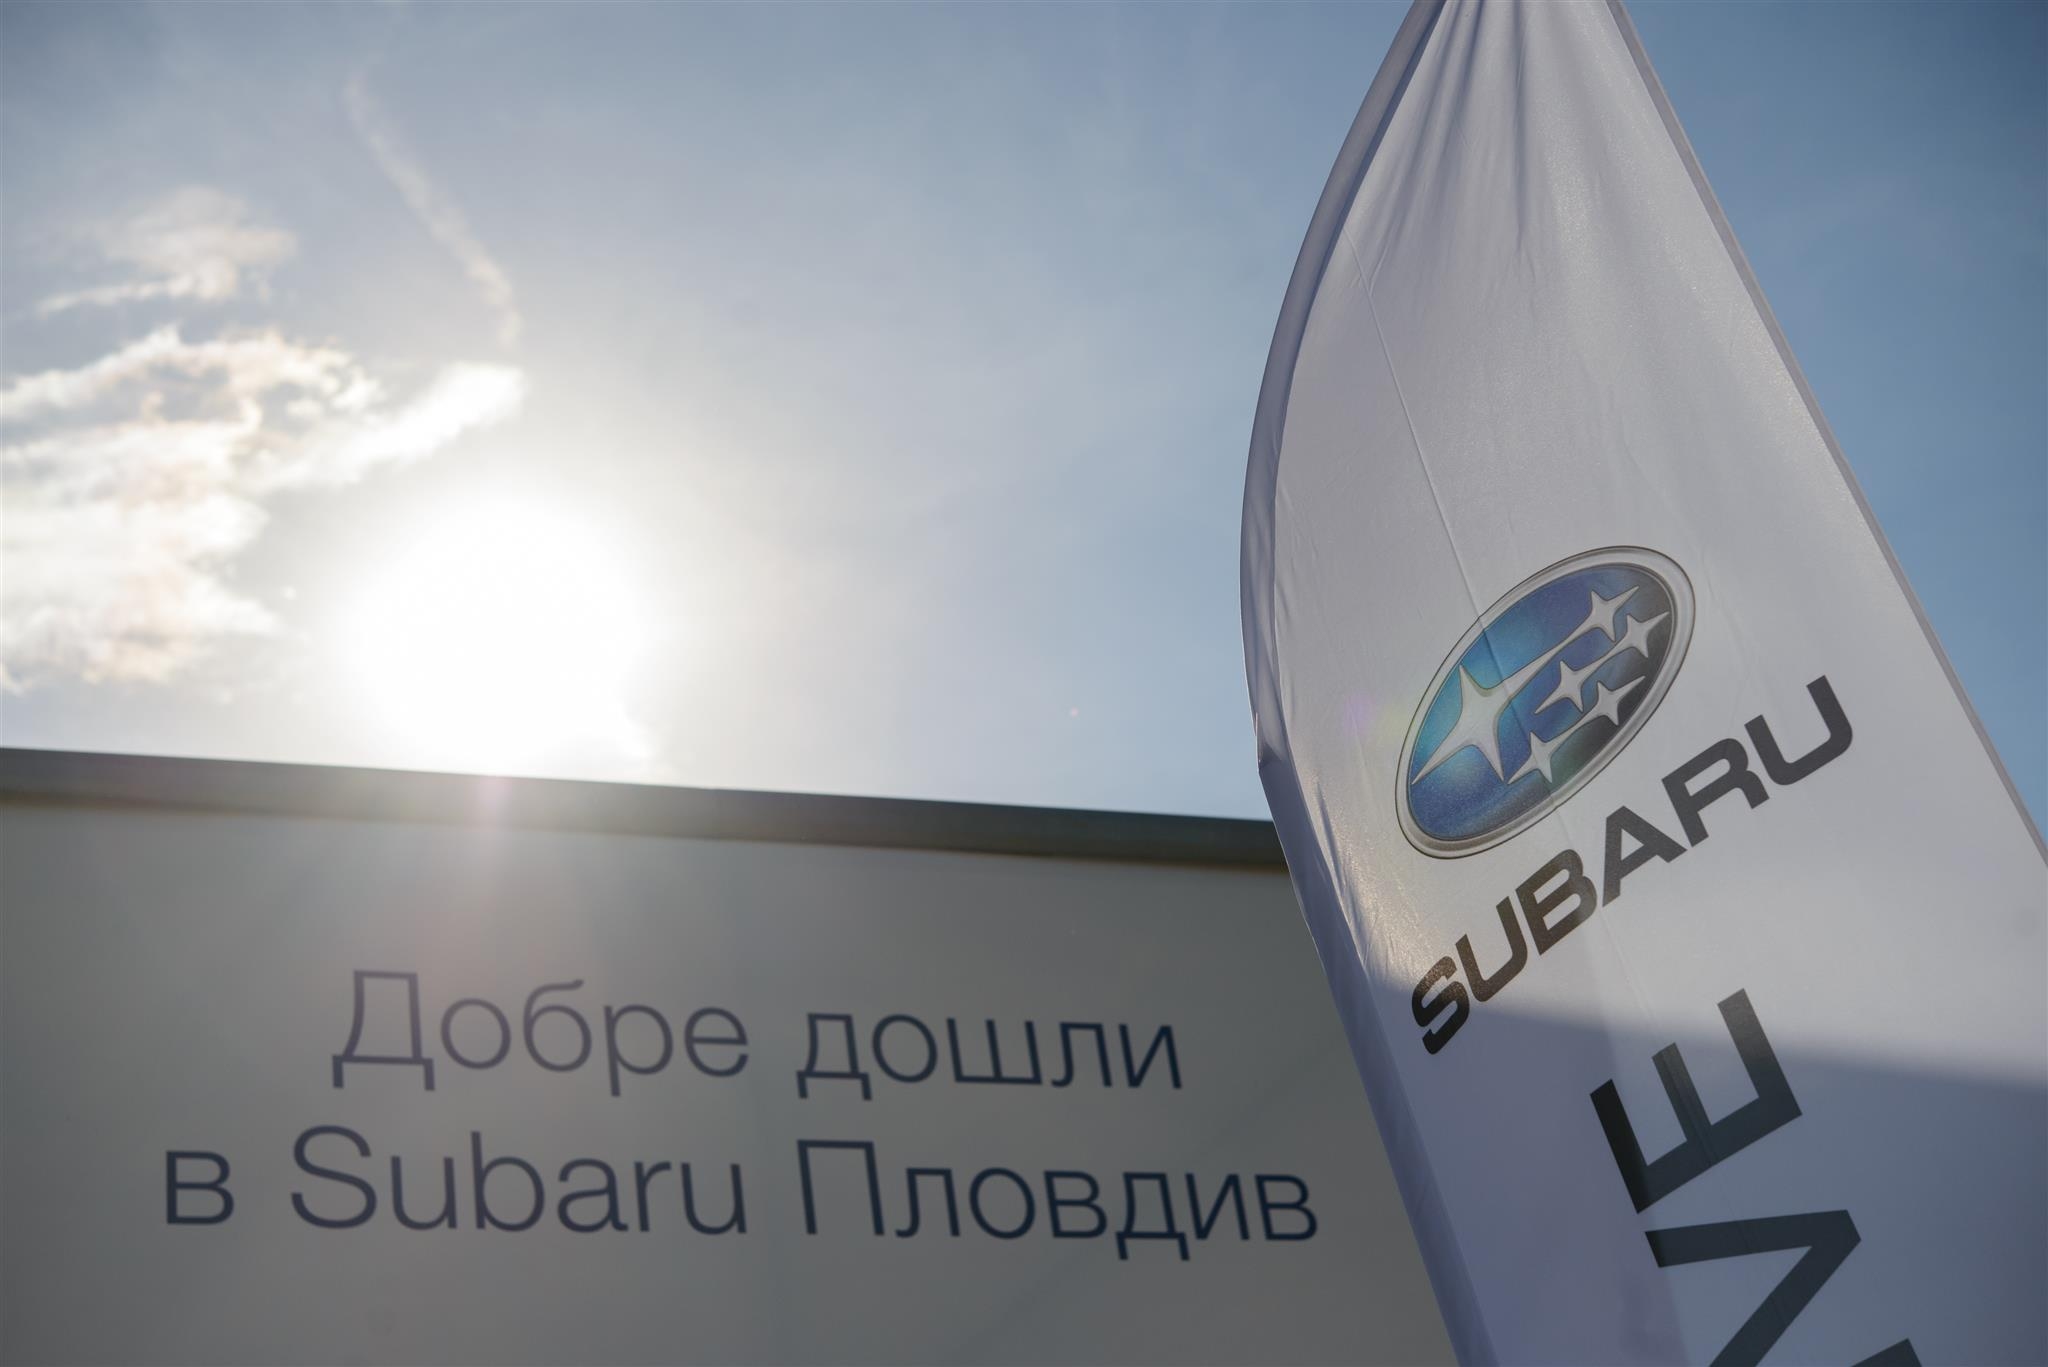 Бултрако Моторс, клон Пловдив, става официален дилър на високотехнологичната марка